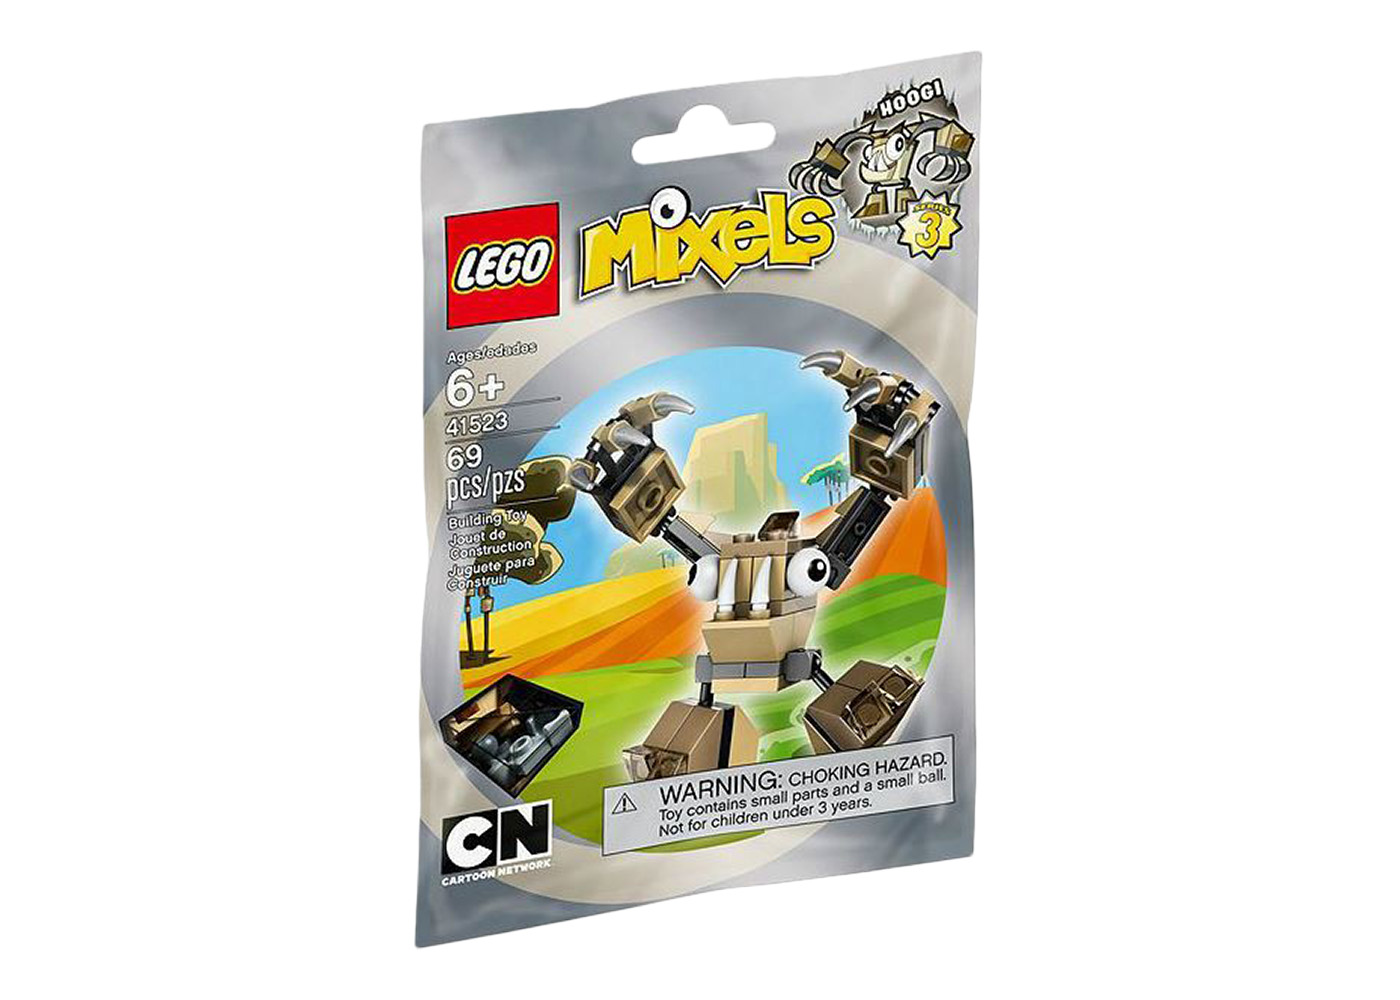 LEGO Mixels HOOGI Set 41523 - US